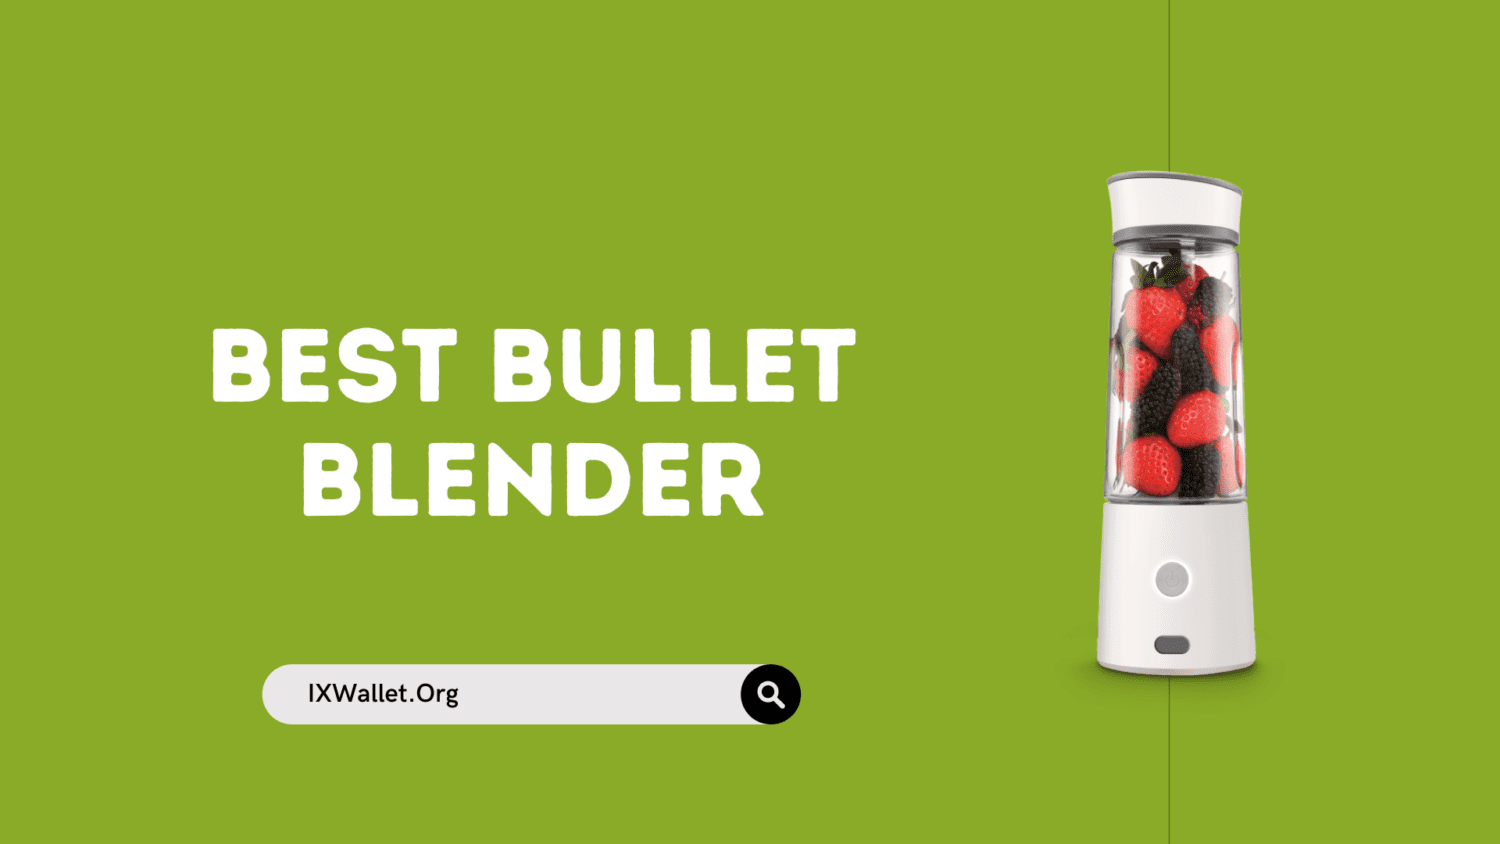 Best Bullet Blender on Amazon: Buyer’s Guide